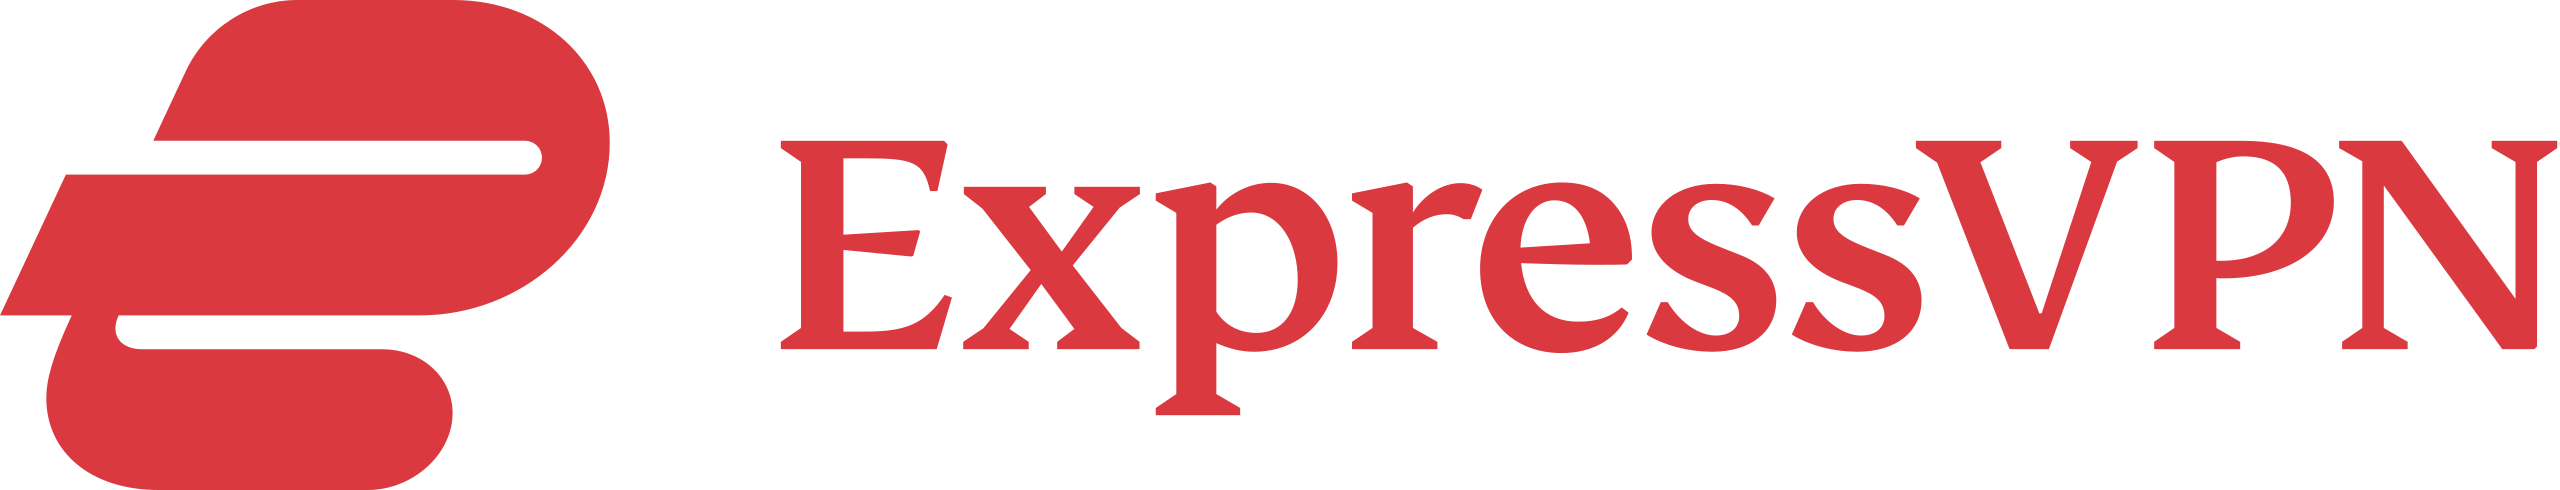 Express VPN for FireStick